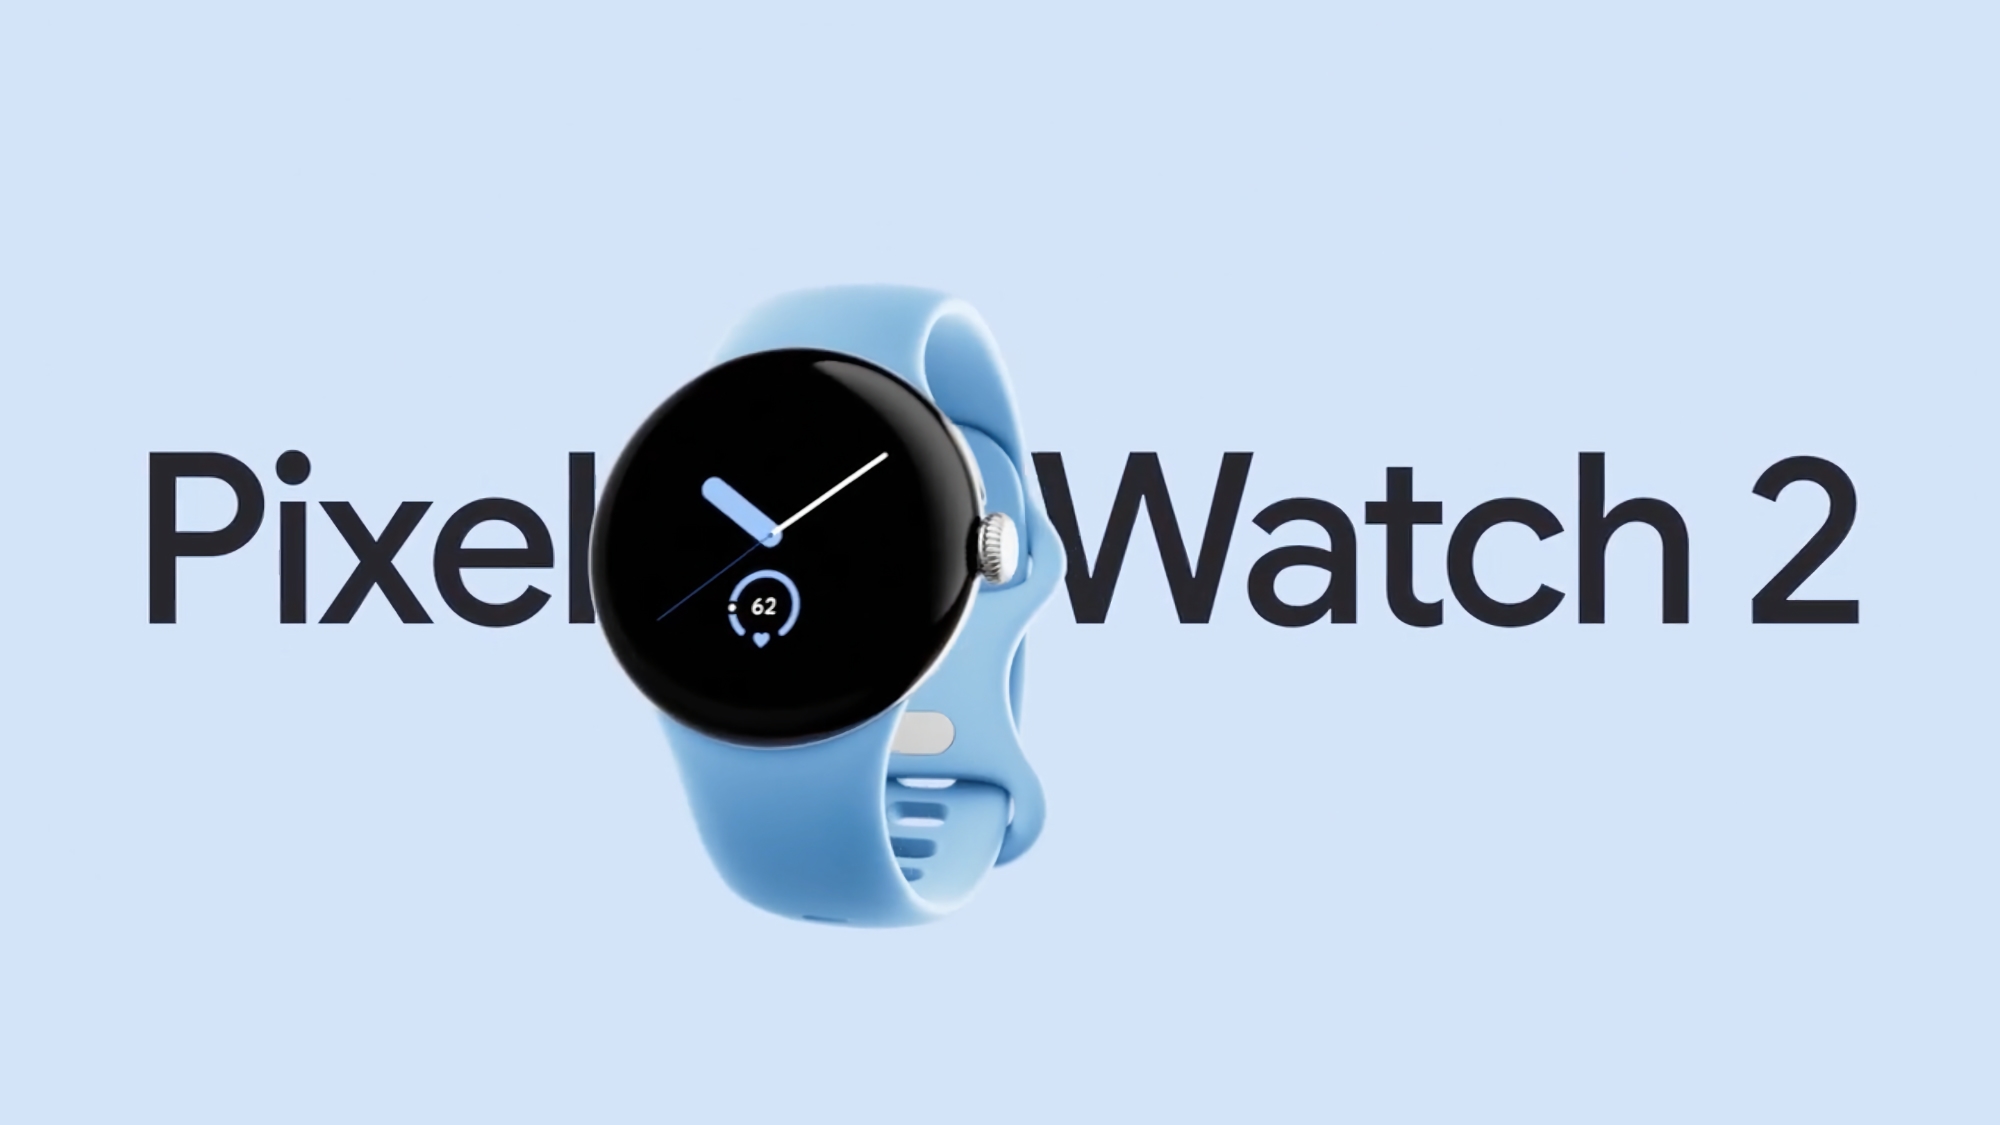 Körpertemperatursensor, aktualisierter Herzfrequenzmesser und neue Armbänder: Google Pixel Watch 2 Werbung ist online erschienen